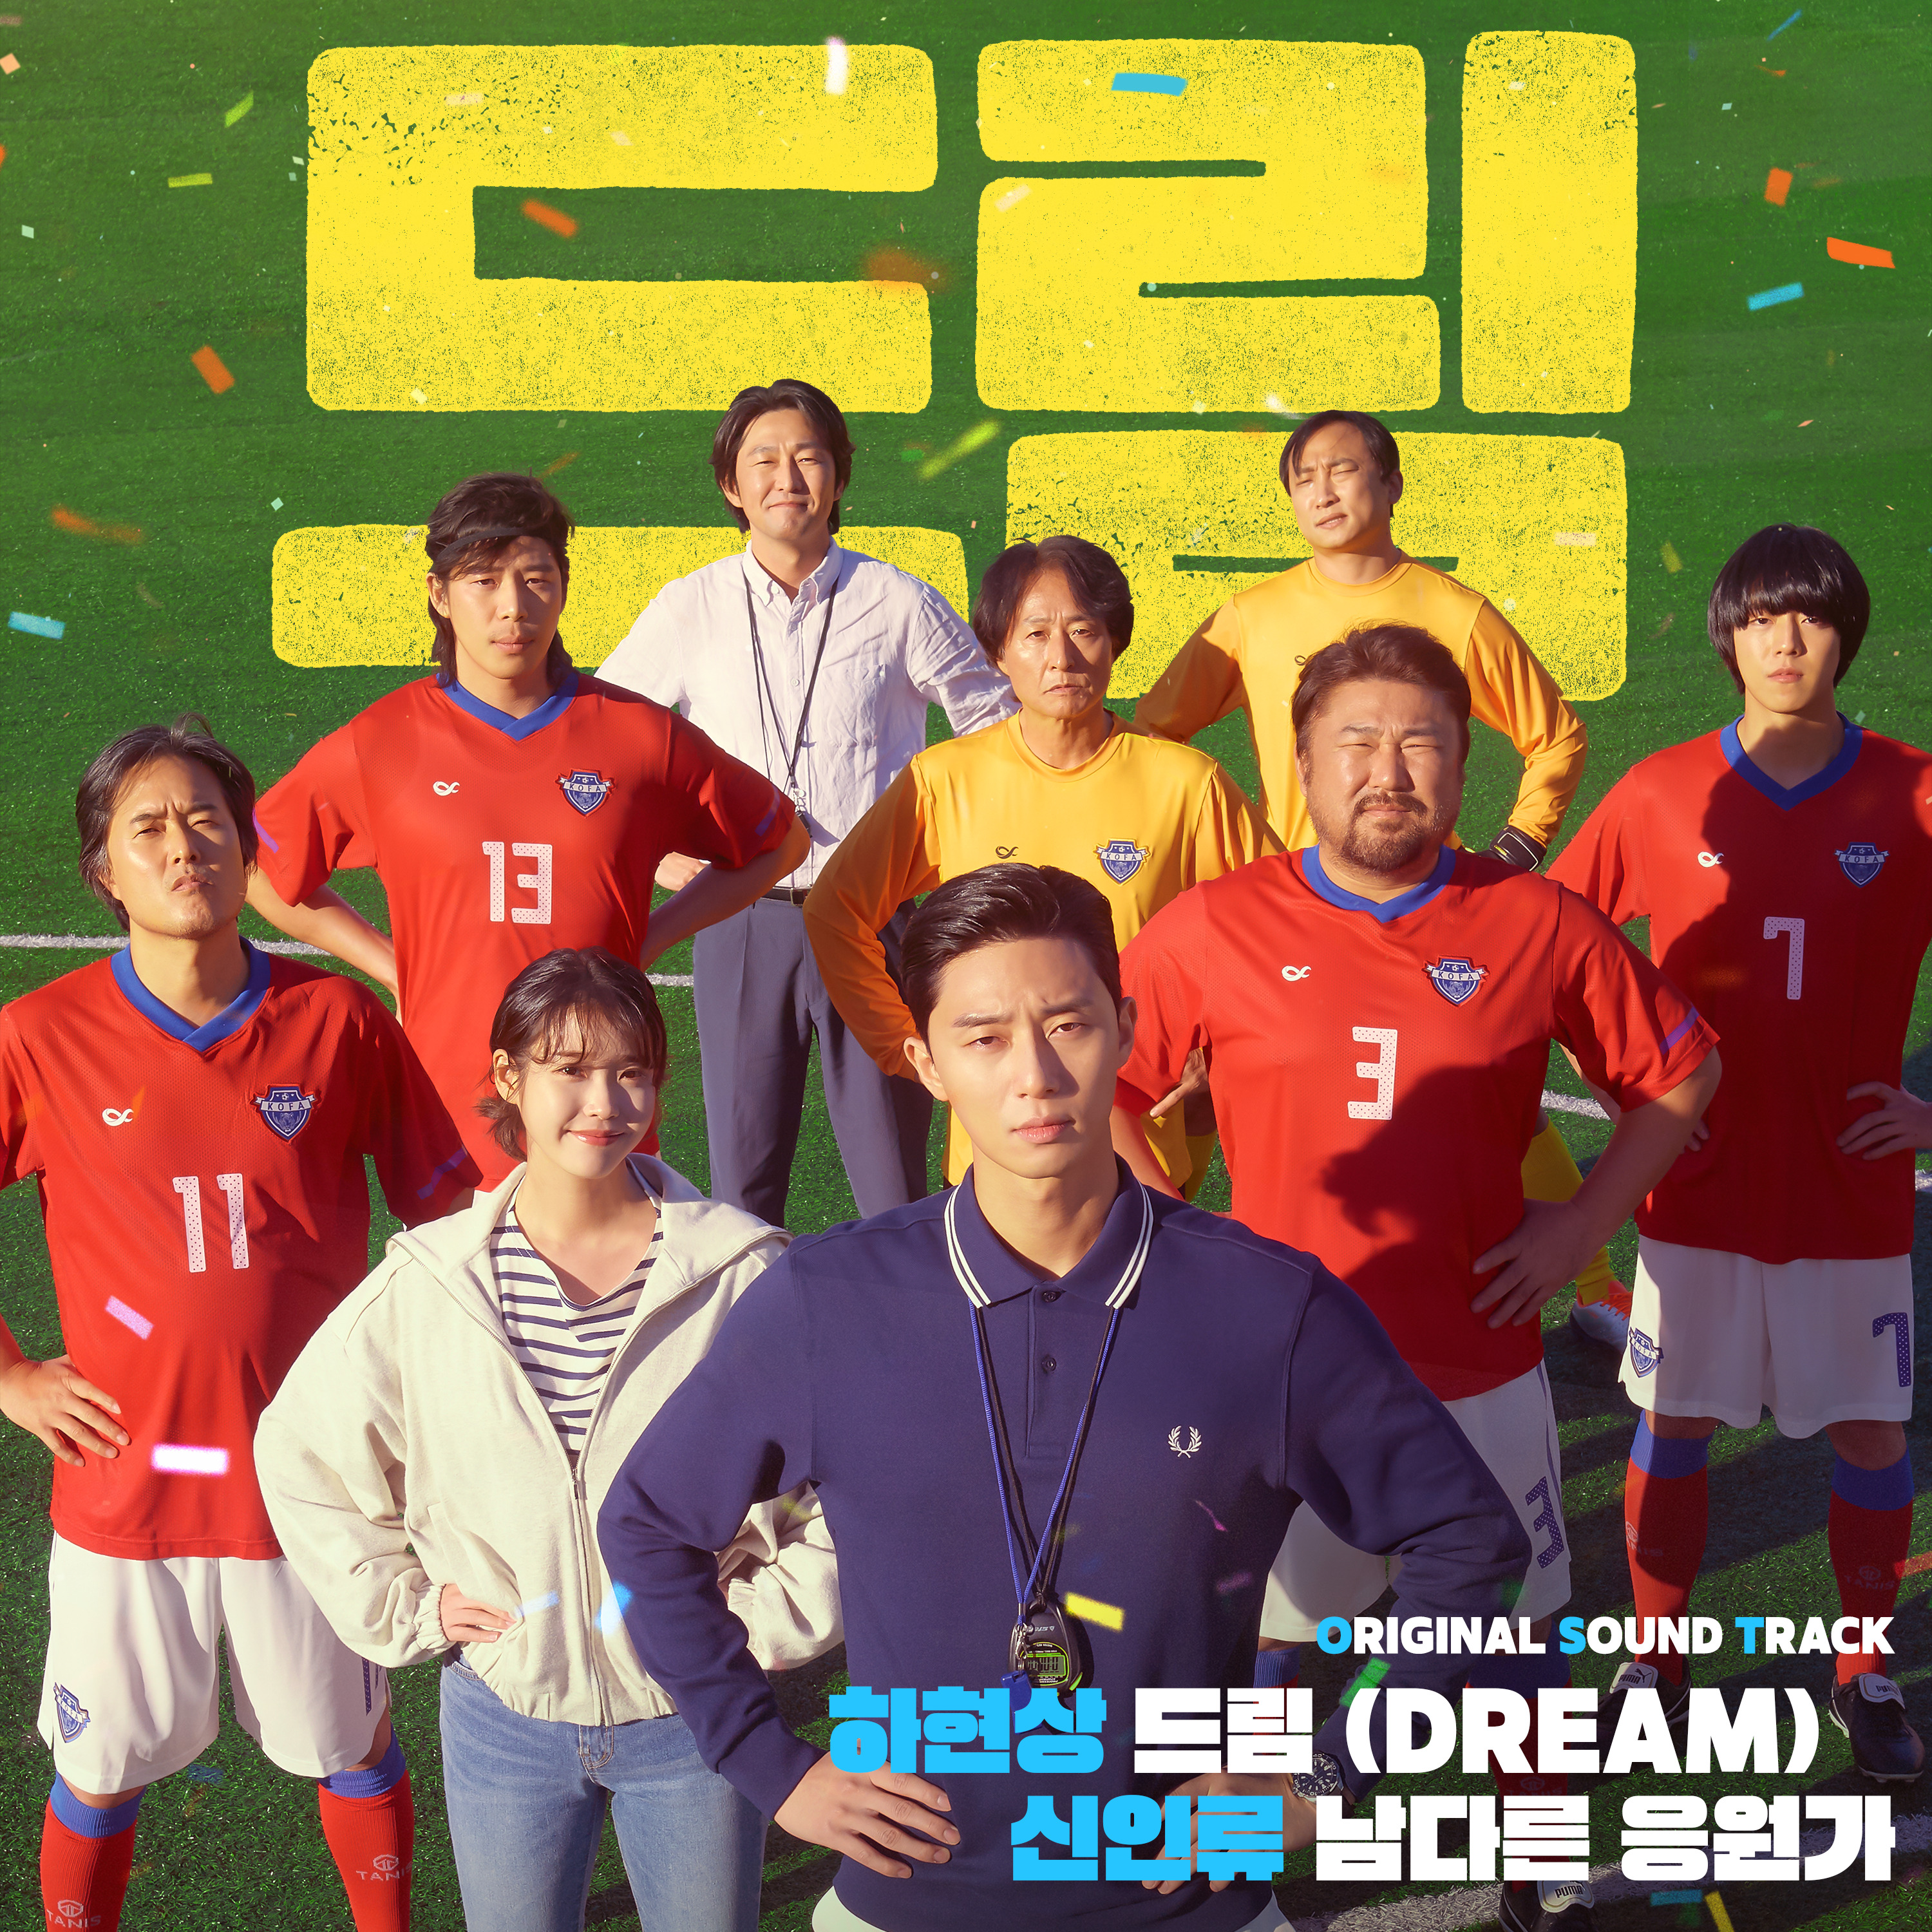 [情報] Dream OST - 夏賢尚